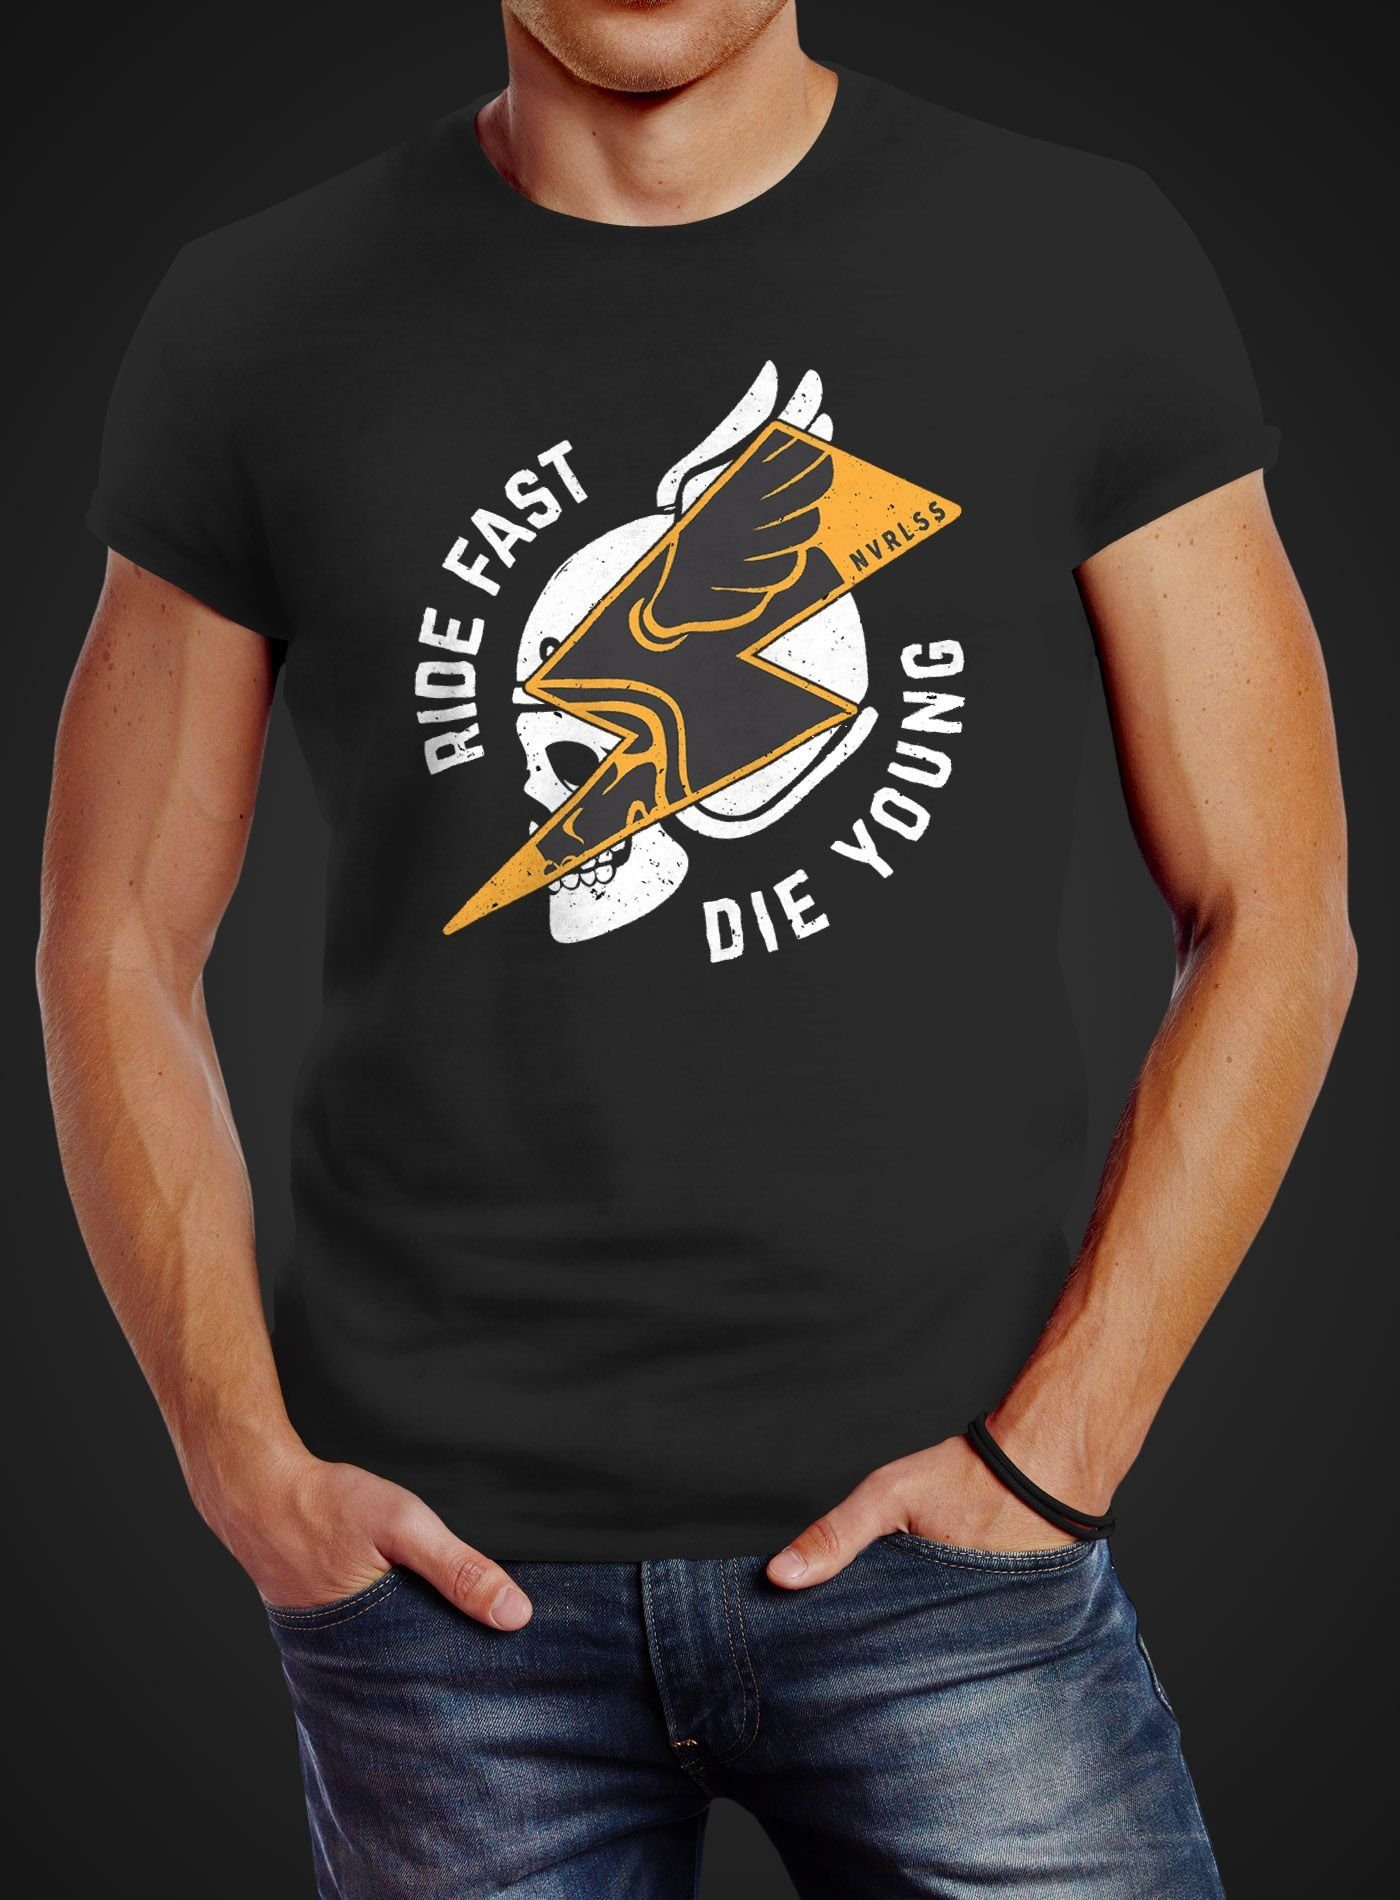 Neverless® Slim Die Neverless T-Shirt Fast Ride schwarz Rocker Young Print-Shirt Spruch Fit Blitz Biker Flash Herren Skull Print Helm Motiv mit